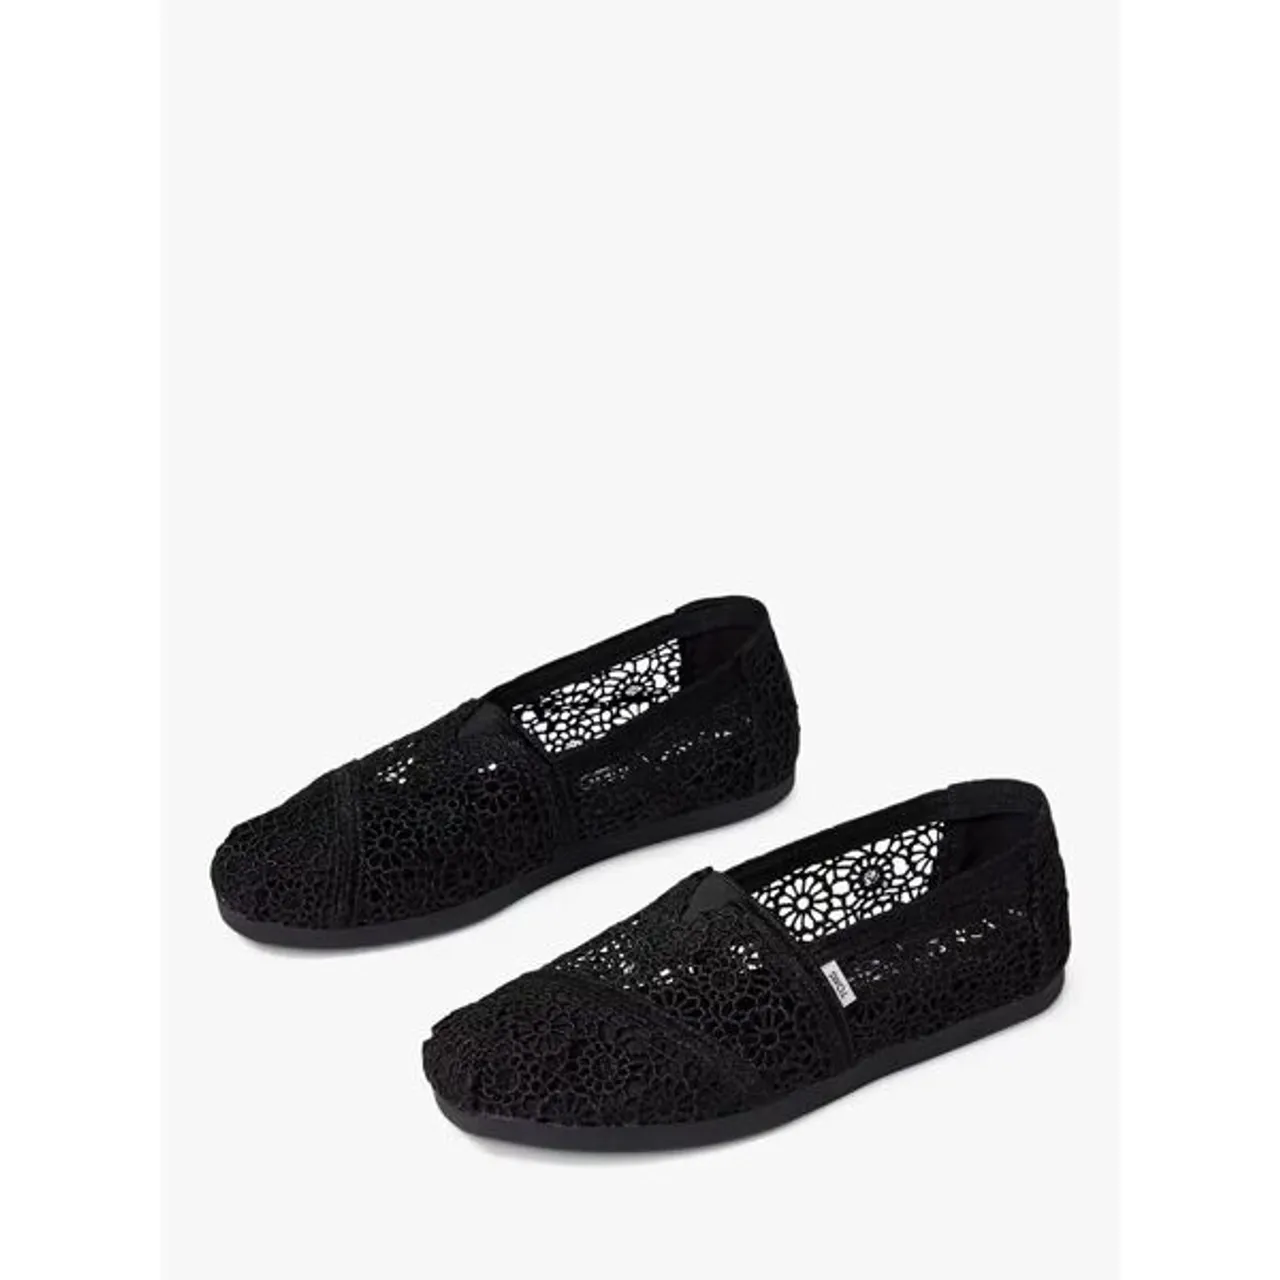 TOMS Alpargata Crochet Espadrille Shoes - Black - Female